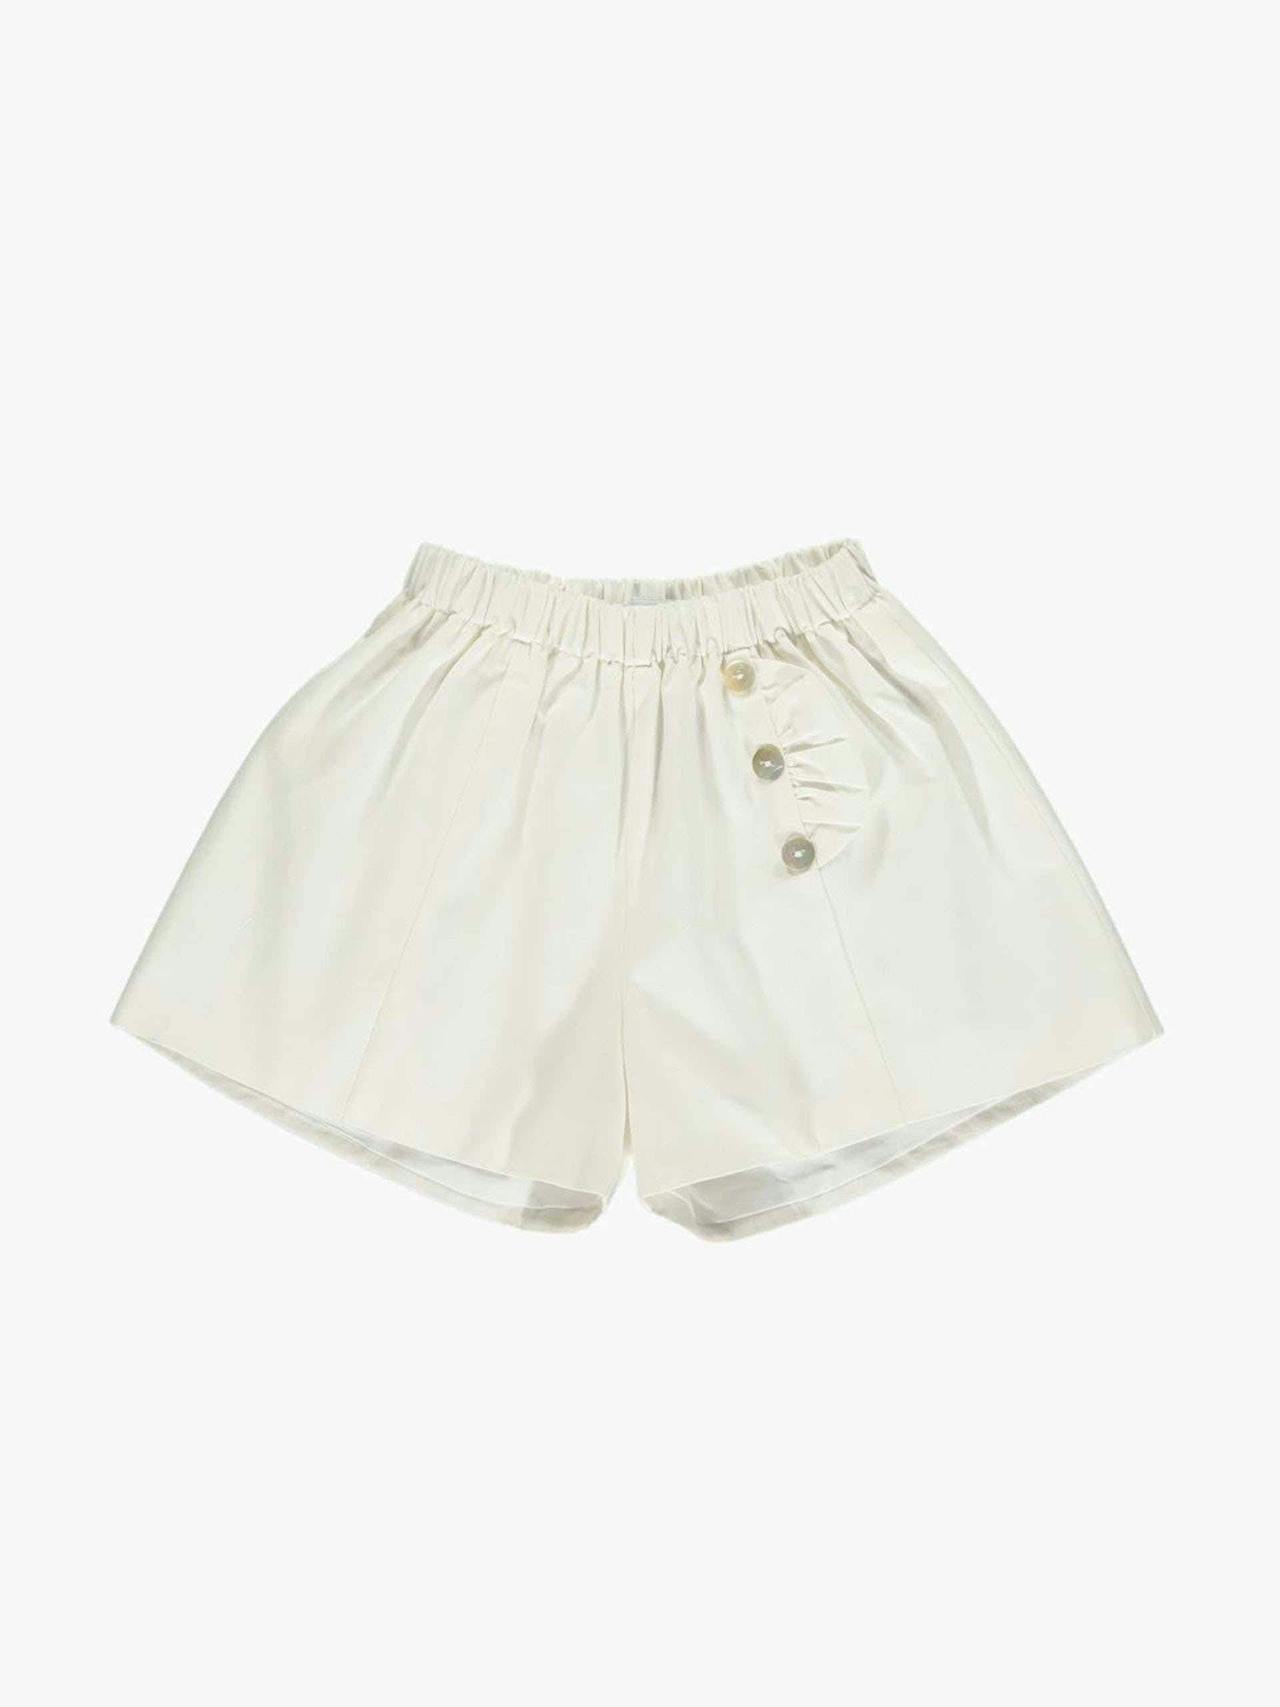 Elisa white shorts